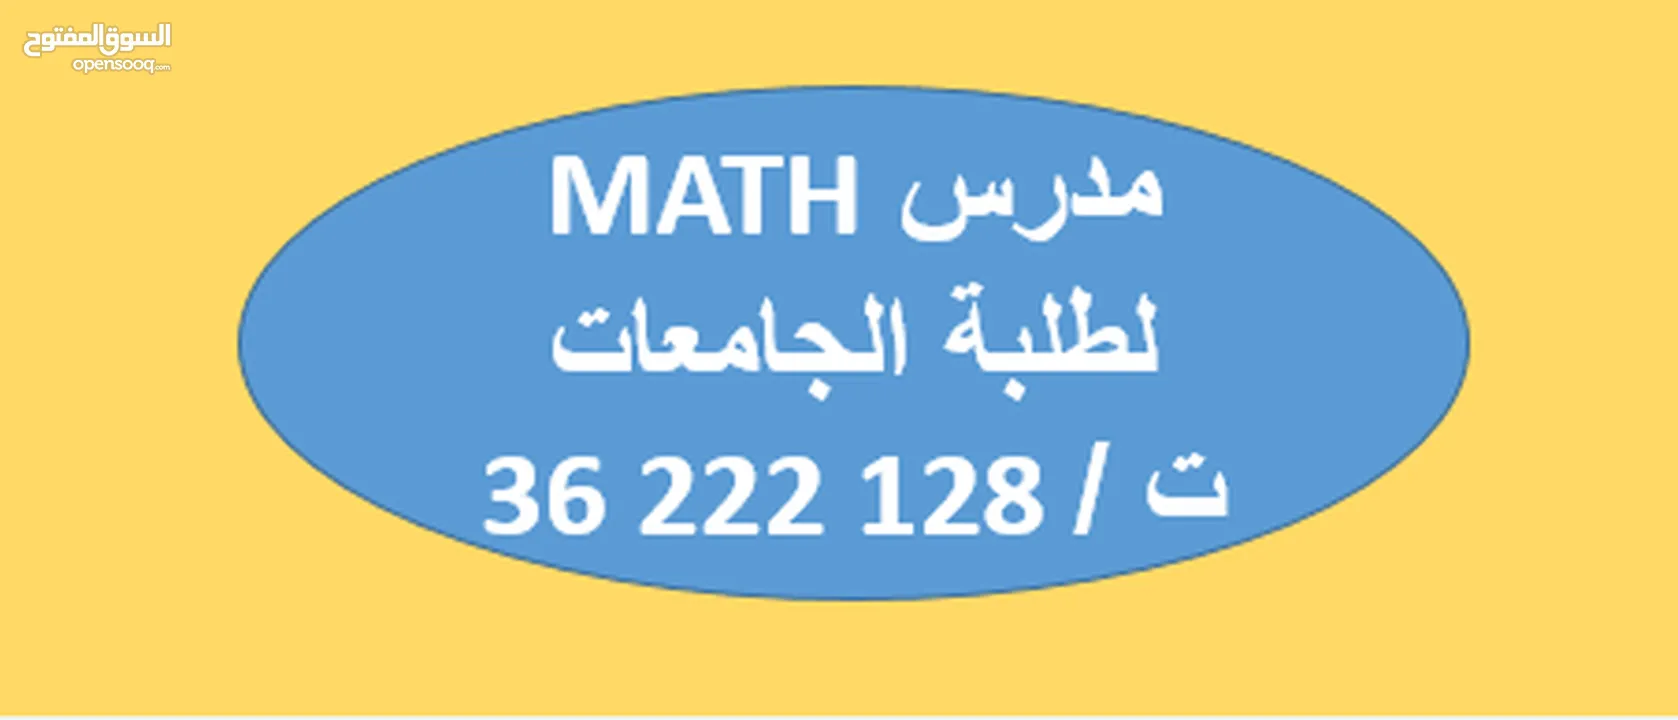 أستاذ رياضيات لطلبة الجامعات الخاصة وجامعة البحرين  لجميع مقررات ال MATH +STAT+CALCULS